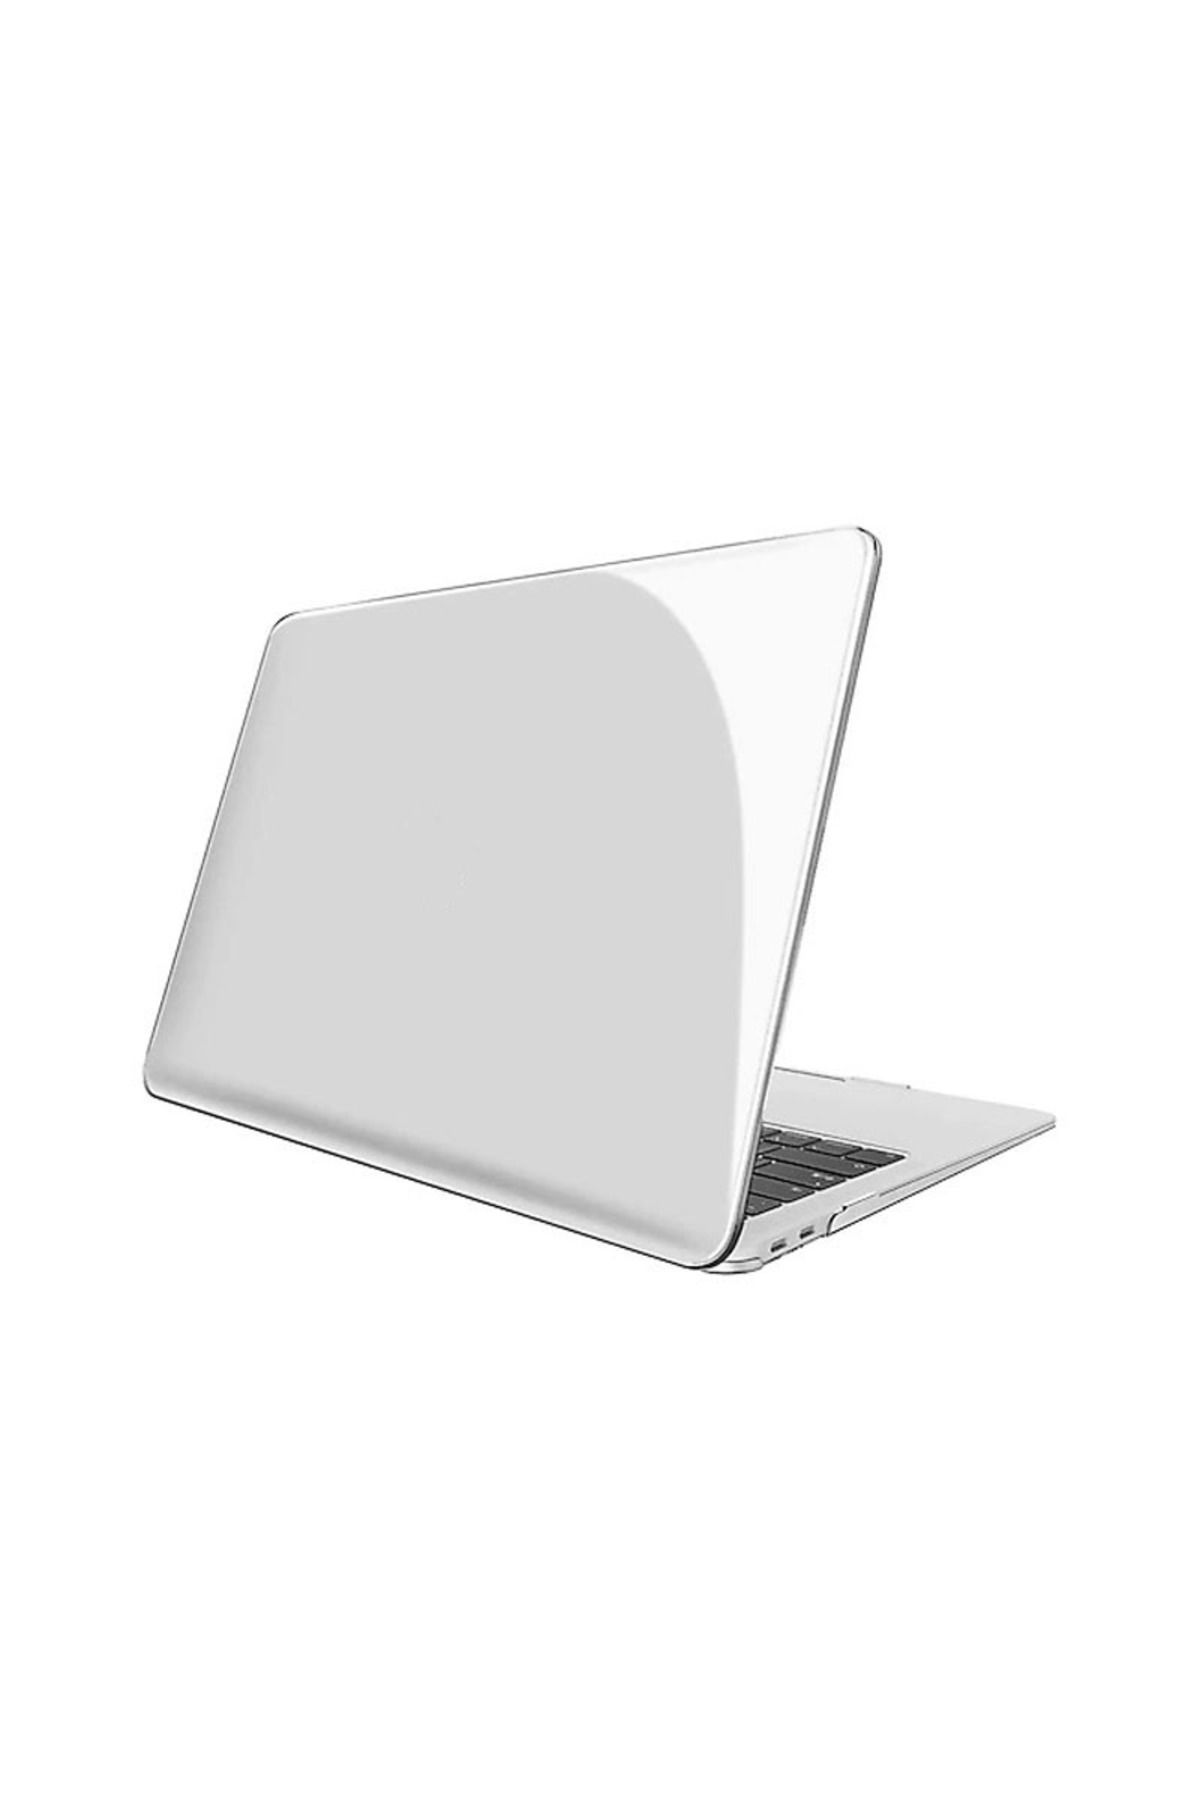 ZMOBILE Macbook Pro 13 M1 2021 Parlak Şeffaf Kapak Koruma Kılıf 13.3' A2338 Uyumlu